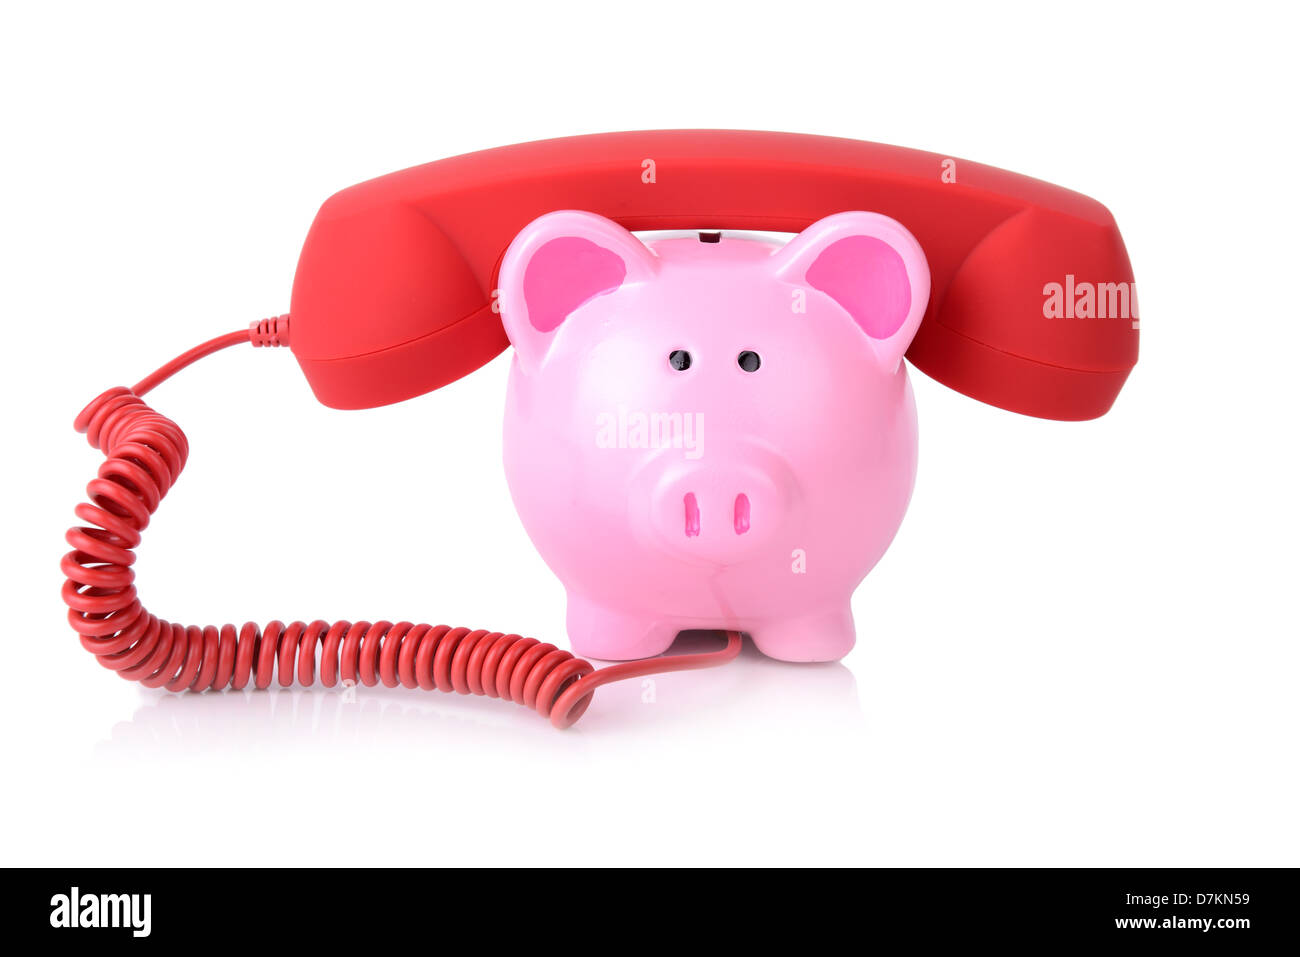 Rufen Sie die Bank für Support oder Telefon-banking Konzept Sparschwein mit roten Telefonhörer isoliert auf weiss Stockfoto